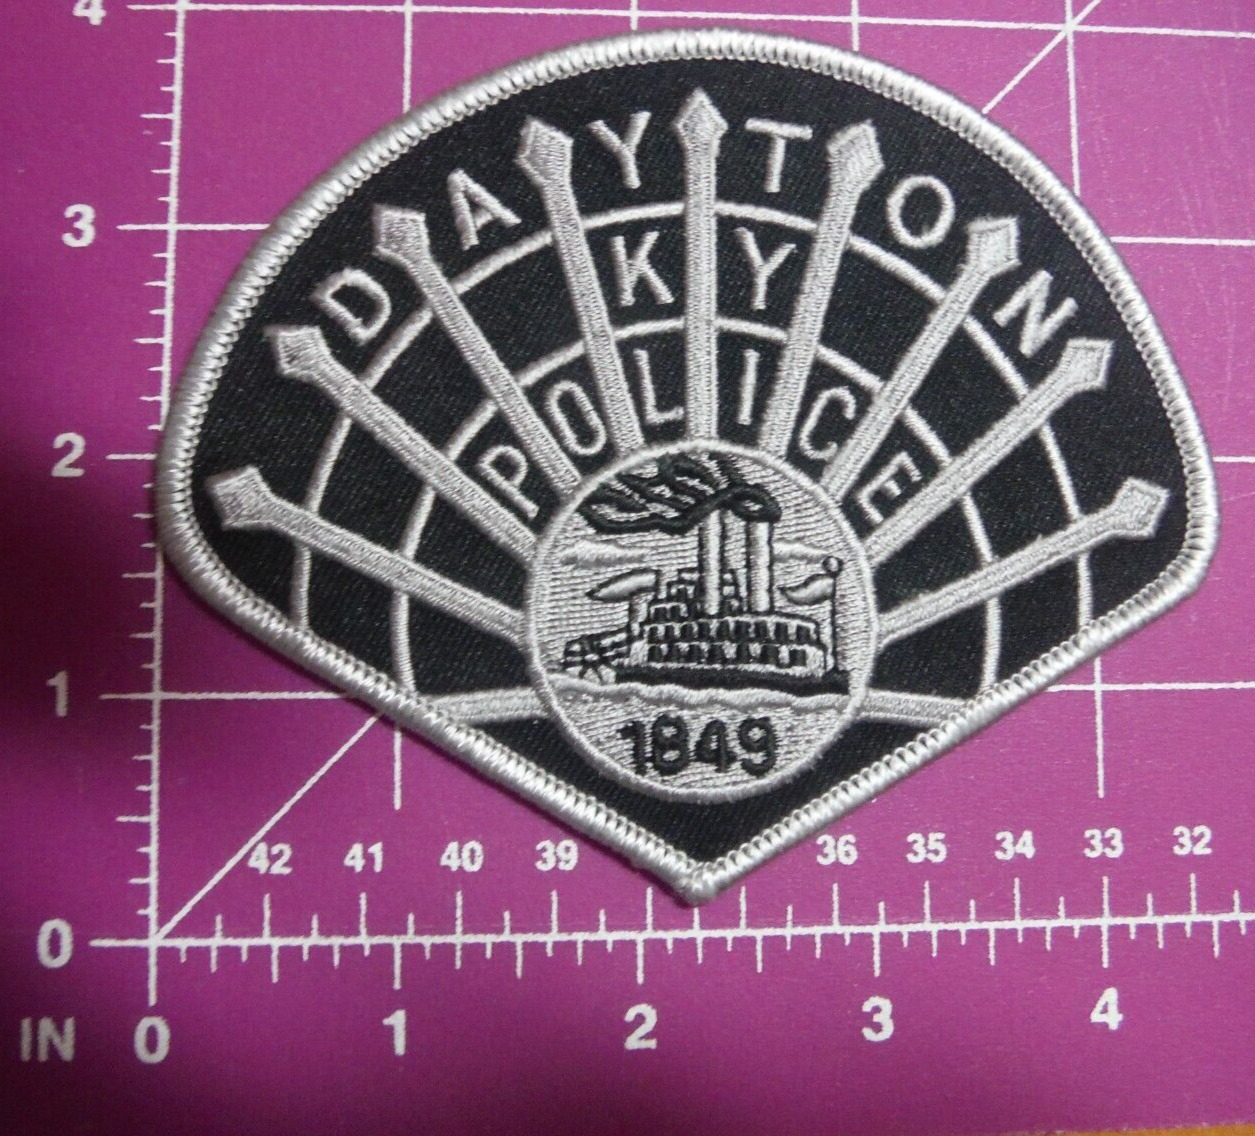 Kentucky-Dayton Police patch